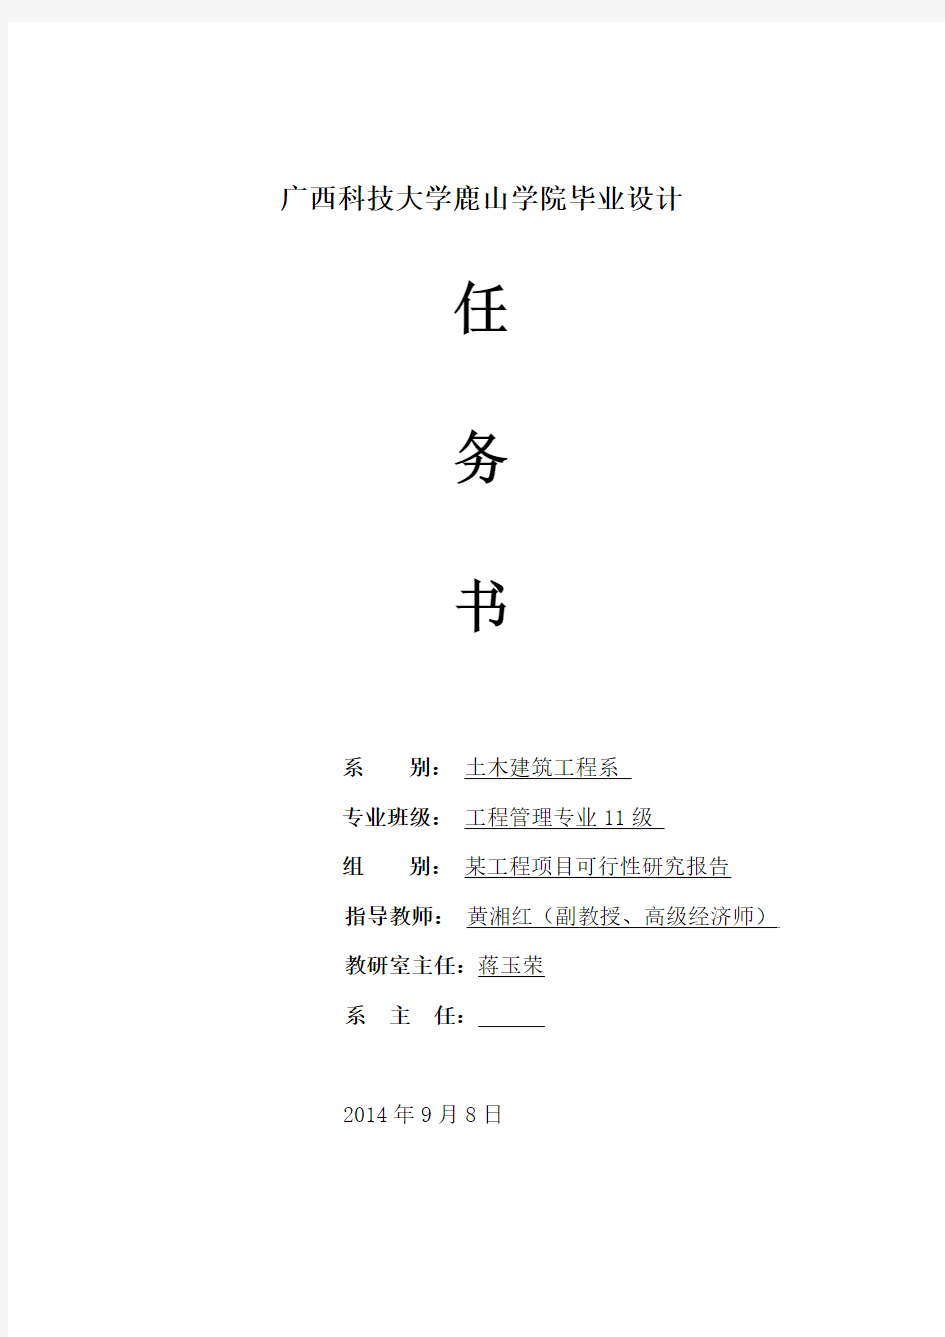 某工程项目可行性研究毕业设计任务书工程L11黄湘红老师(2014.9)